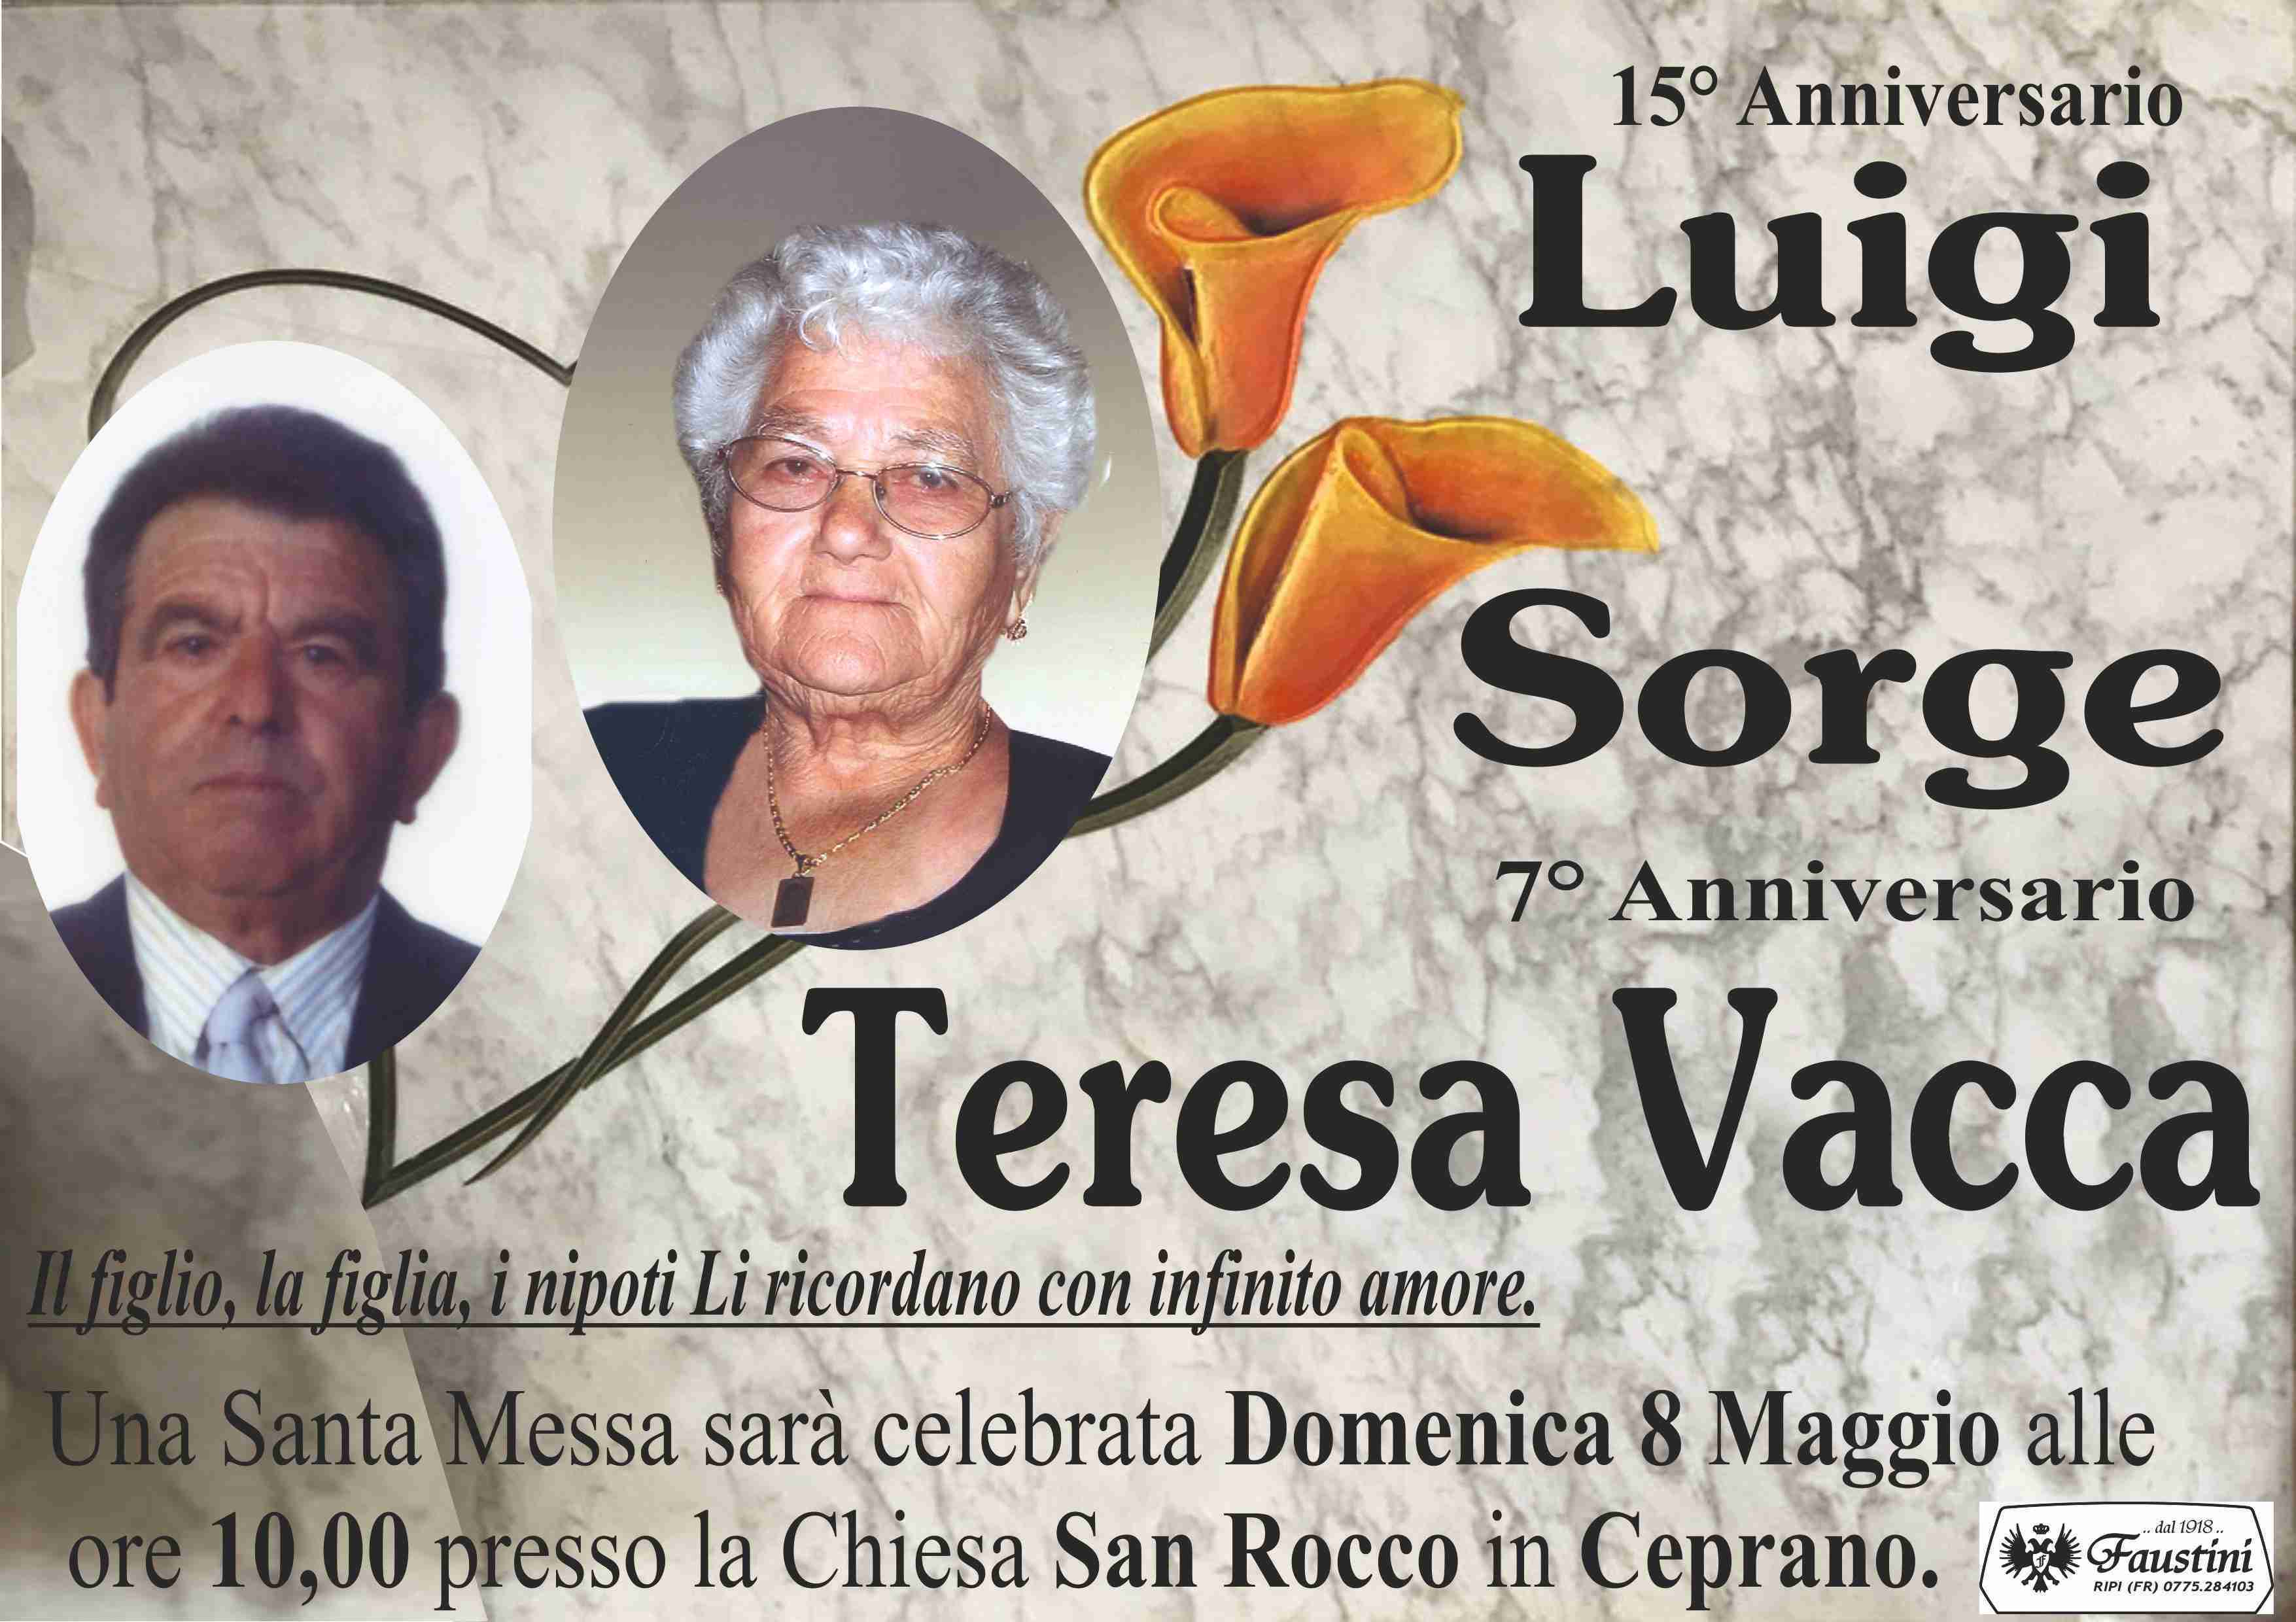 Luigi Sorge e Teresa Vacca